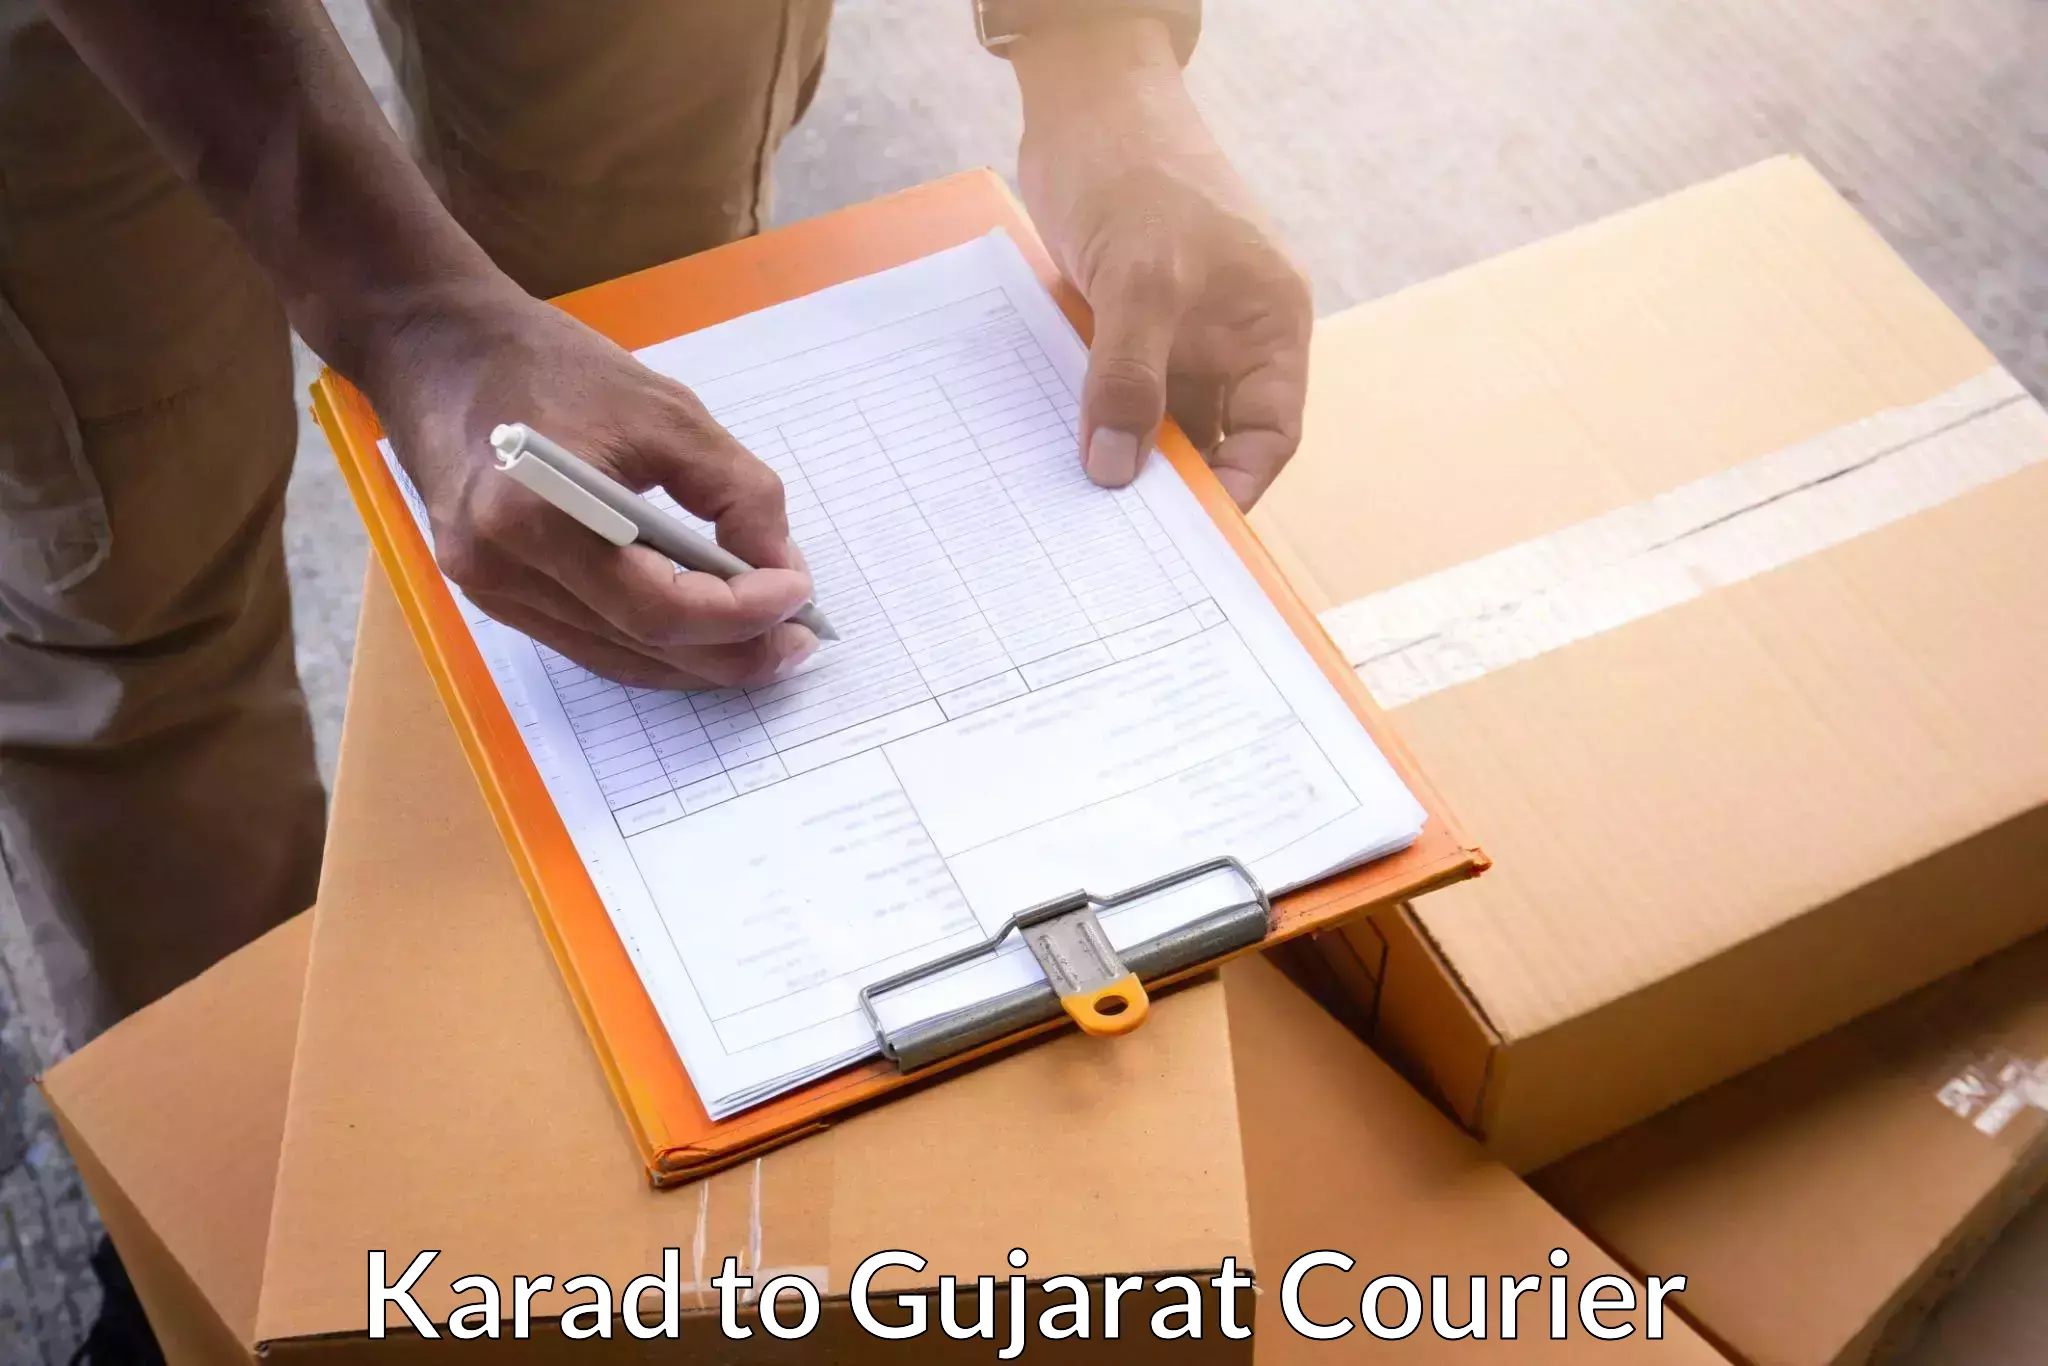 Express package handling Karad to GIDC